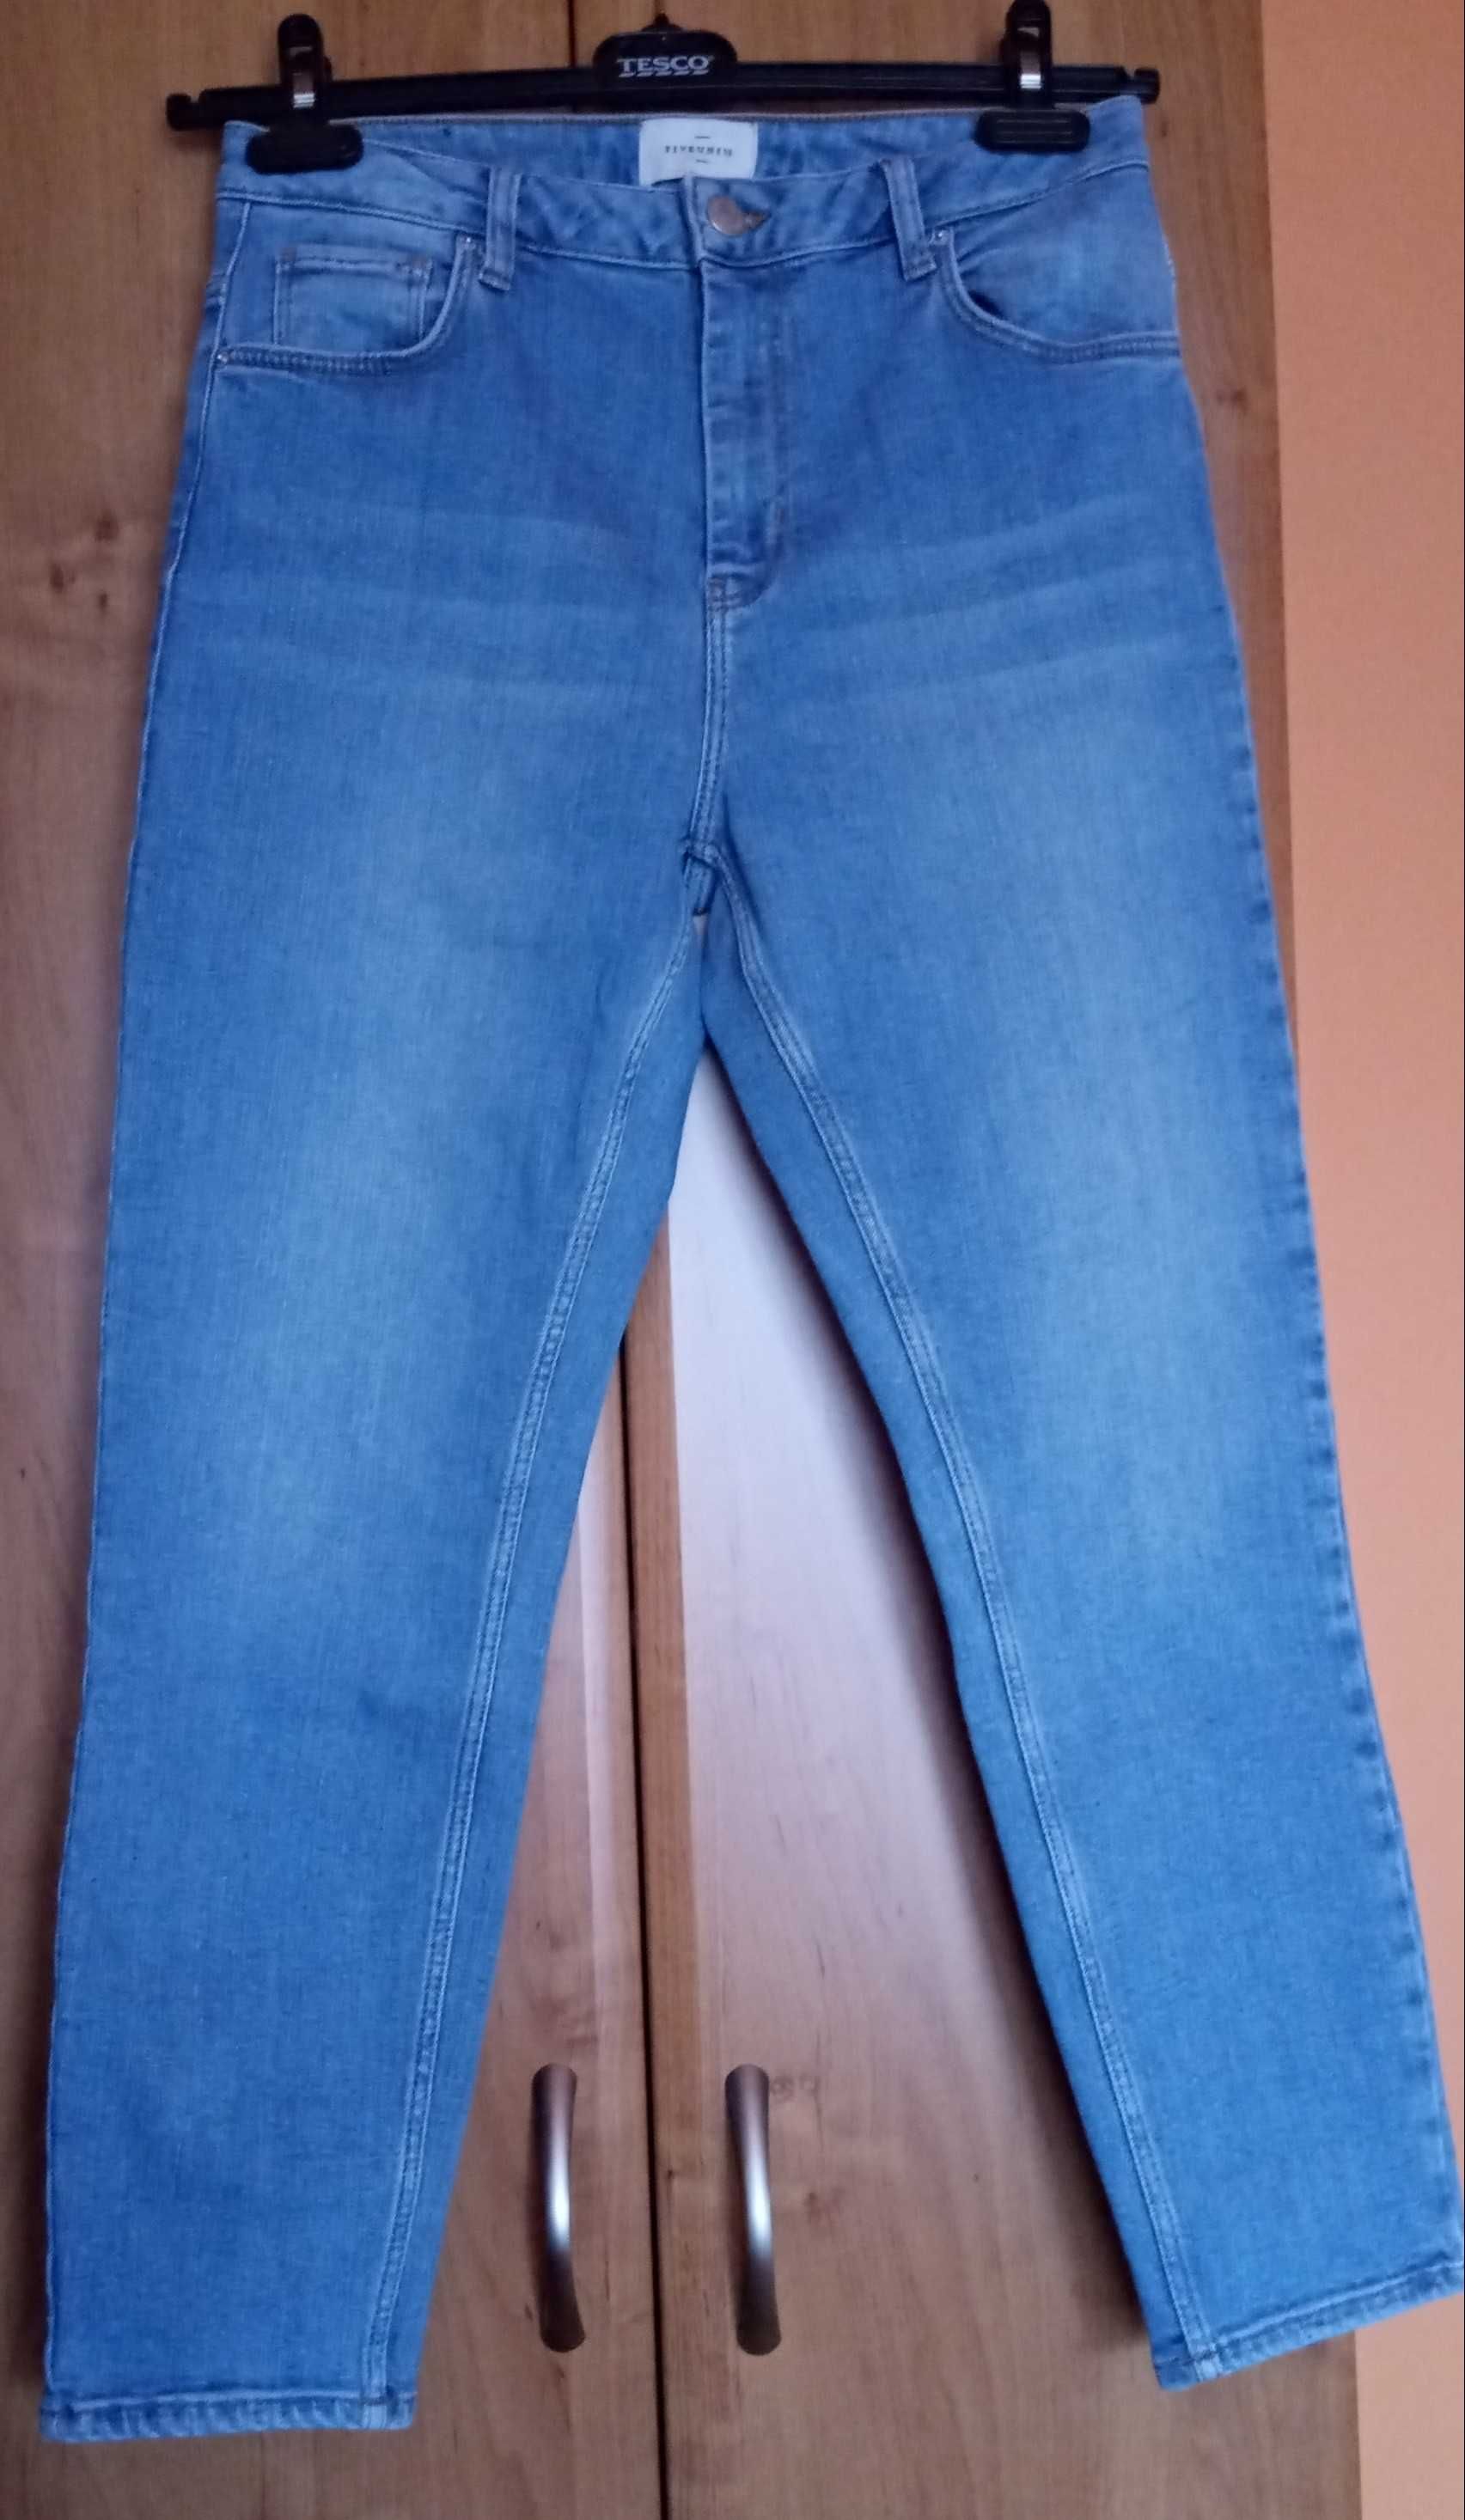 Spodnie jeans Fiveunits, rozm 27, kolor Jasny Niebieski.